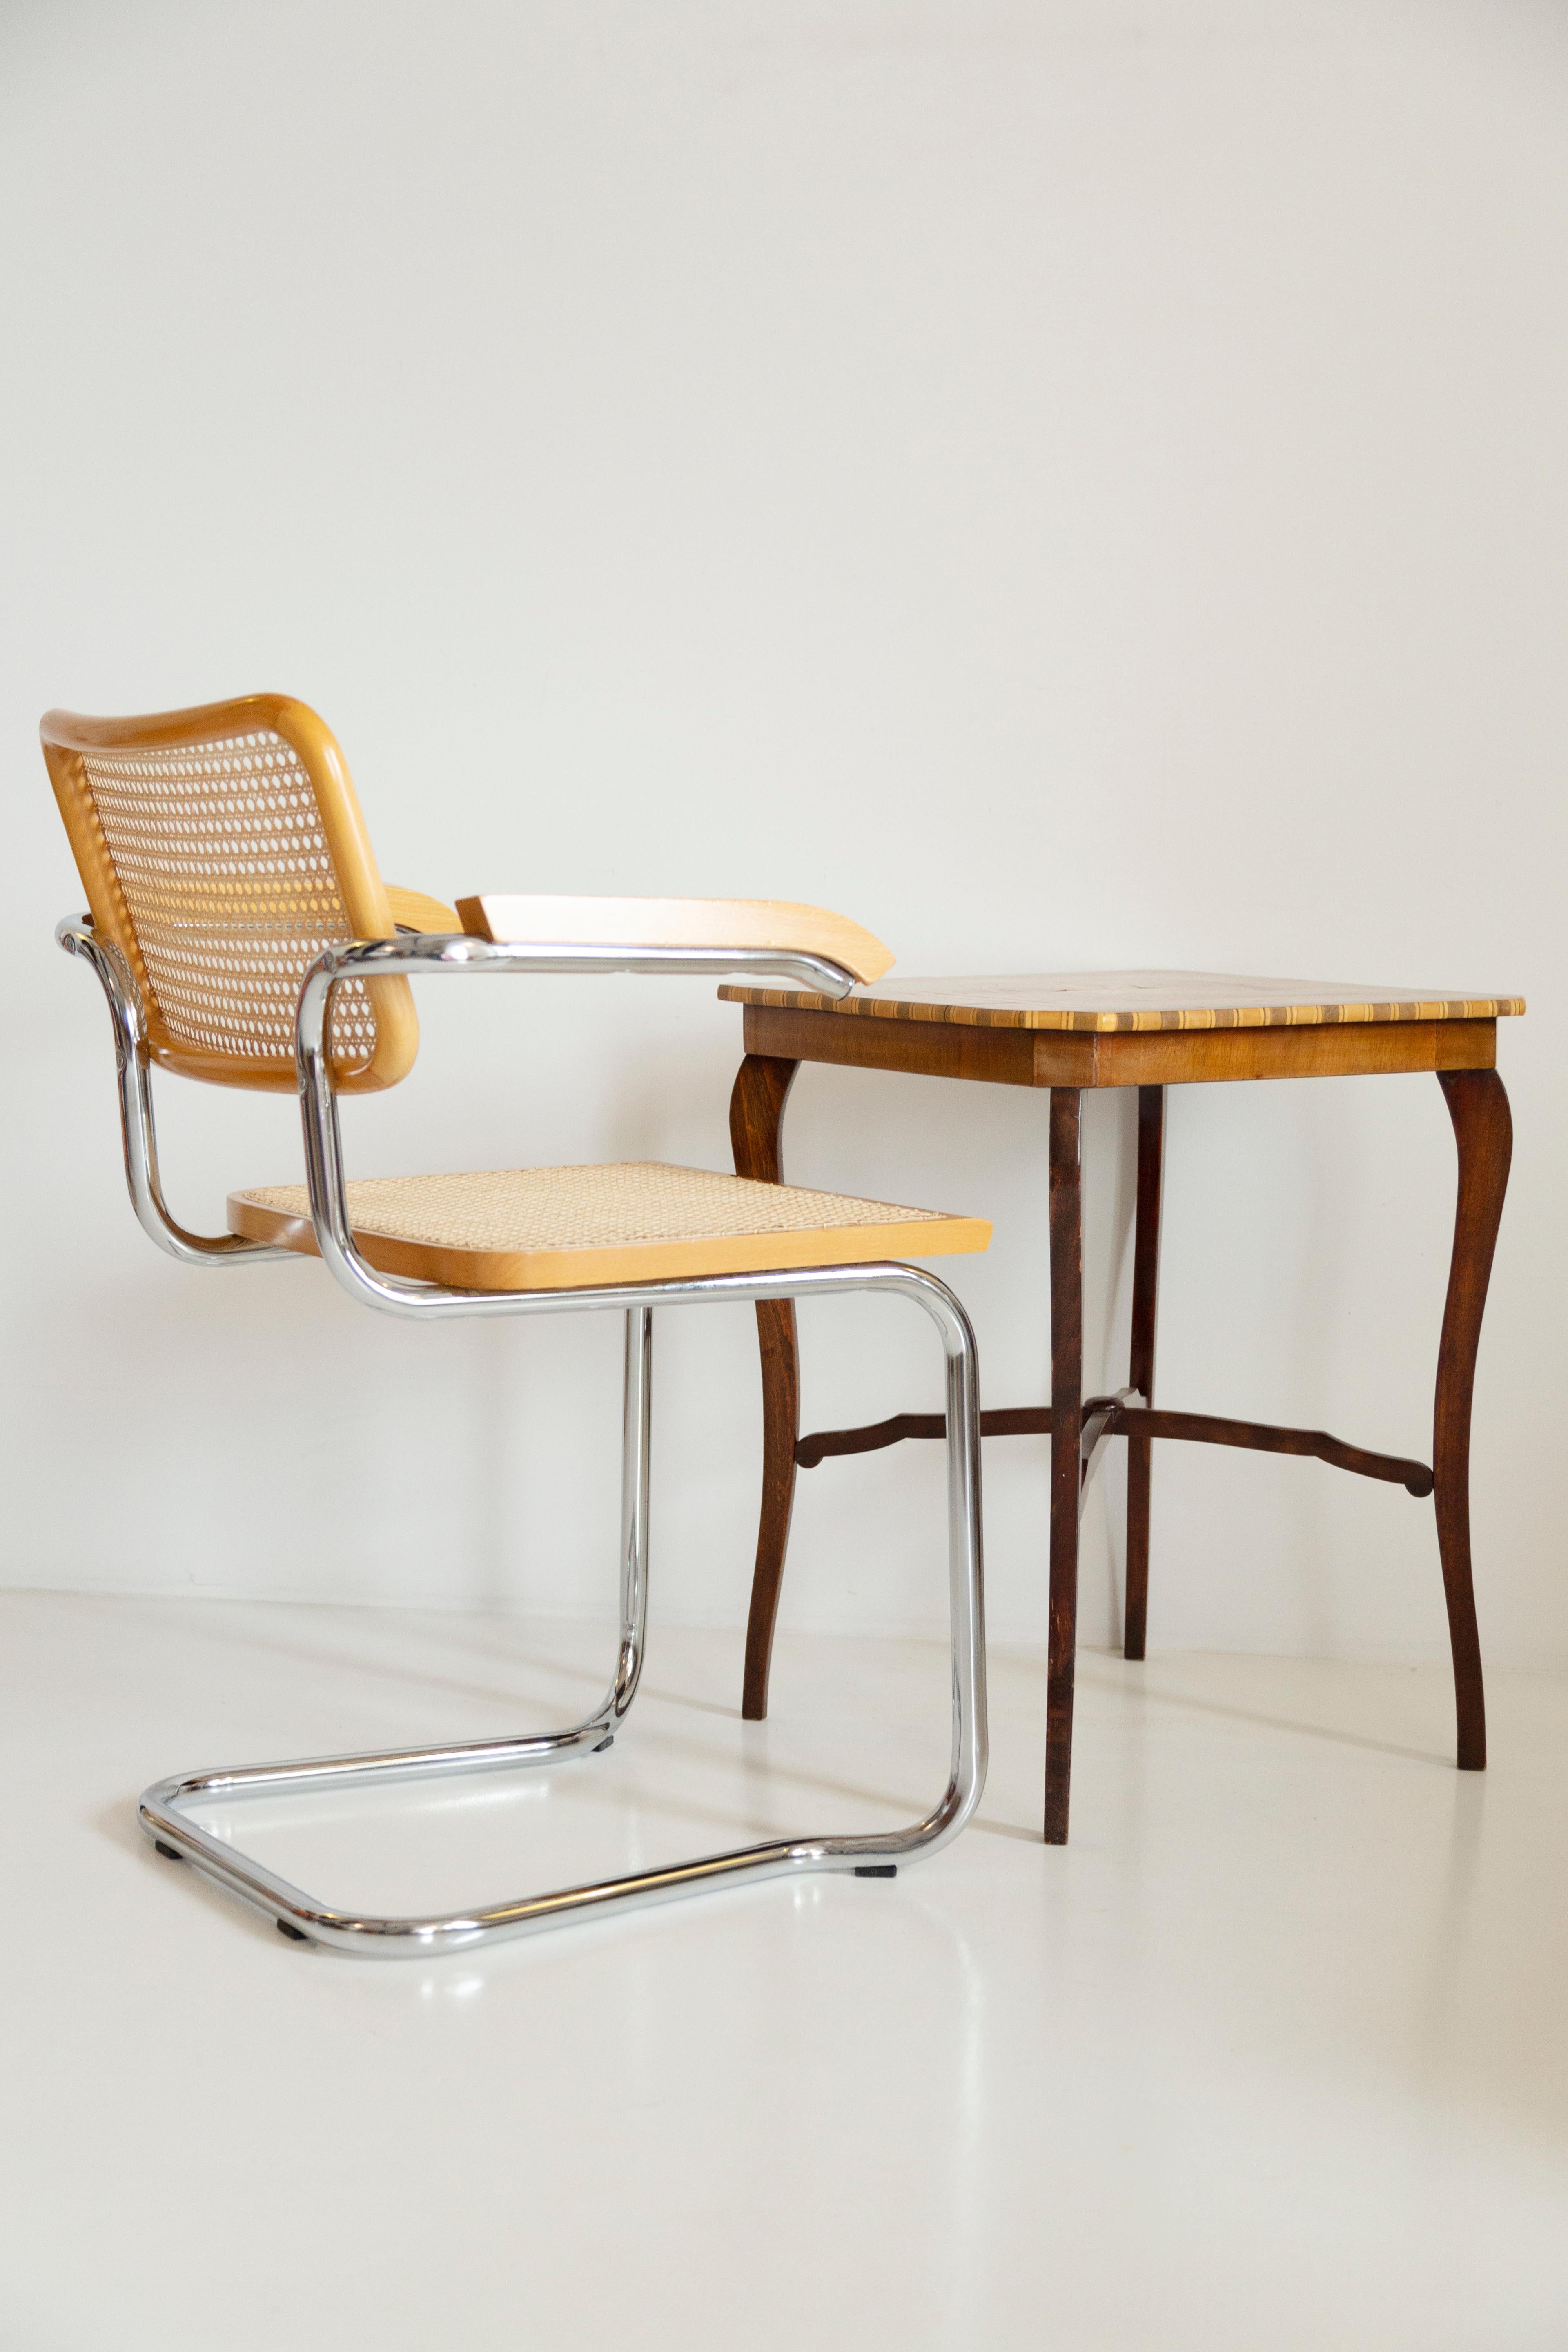 Magnifique chaise en rotin, velours et bois du milieu du siècle. 

La merveilleuse et mondialement célèbre chaise Cesca, conçue dans les années 1920 par Marcel Breuer. La chaise Cesca est produite, entre autres, par des entreprises telles que